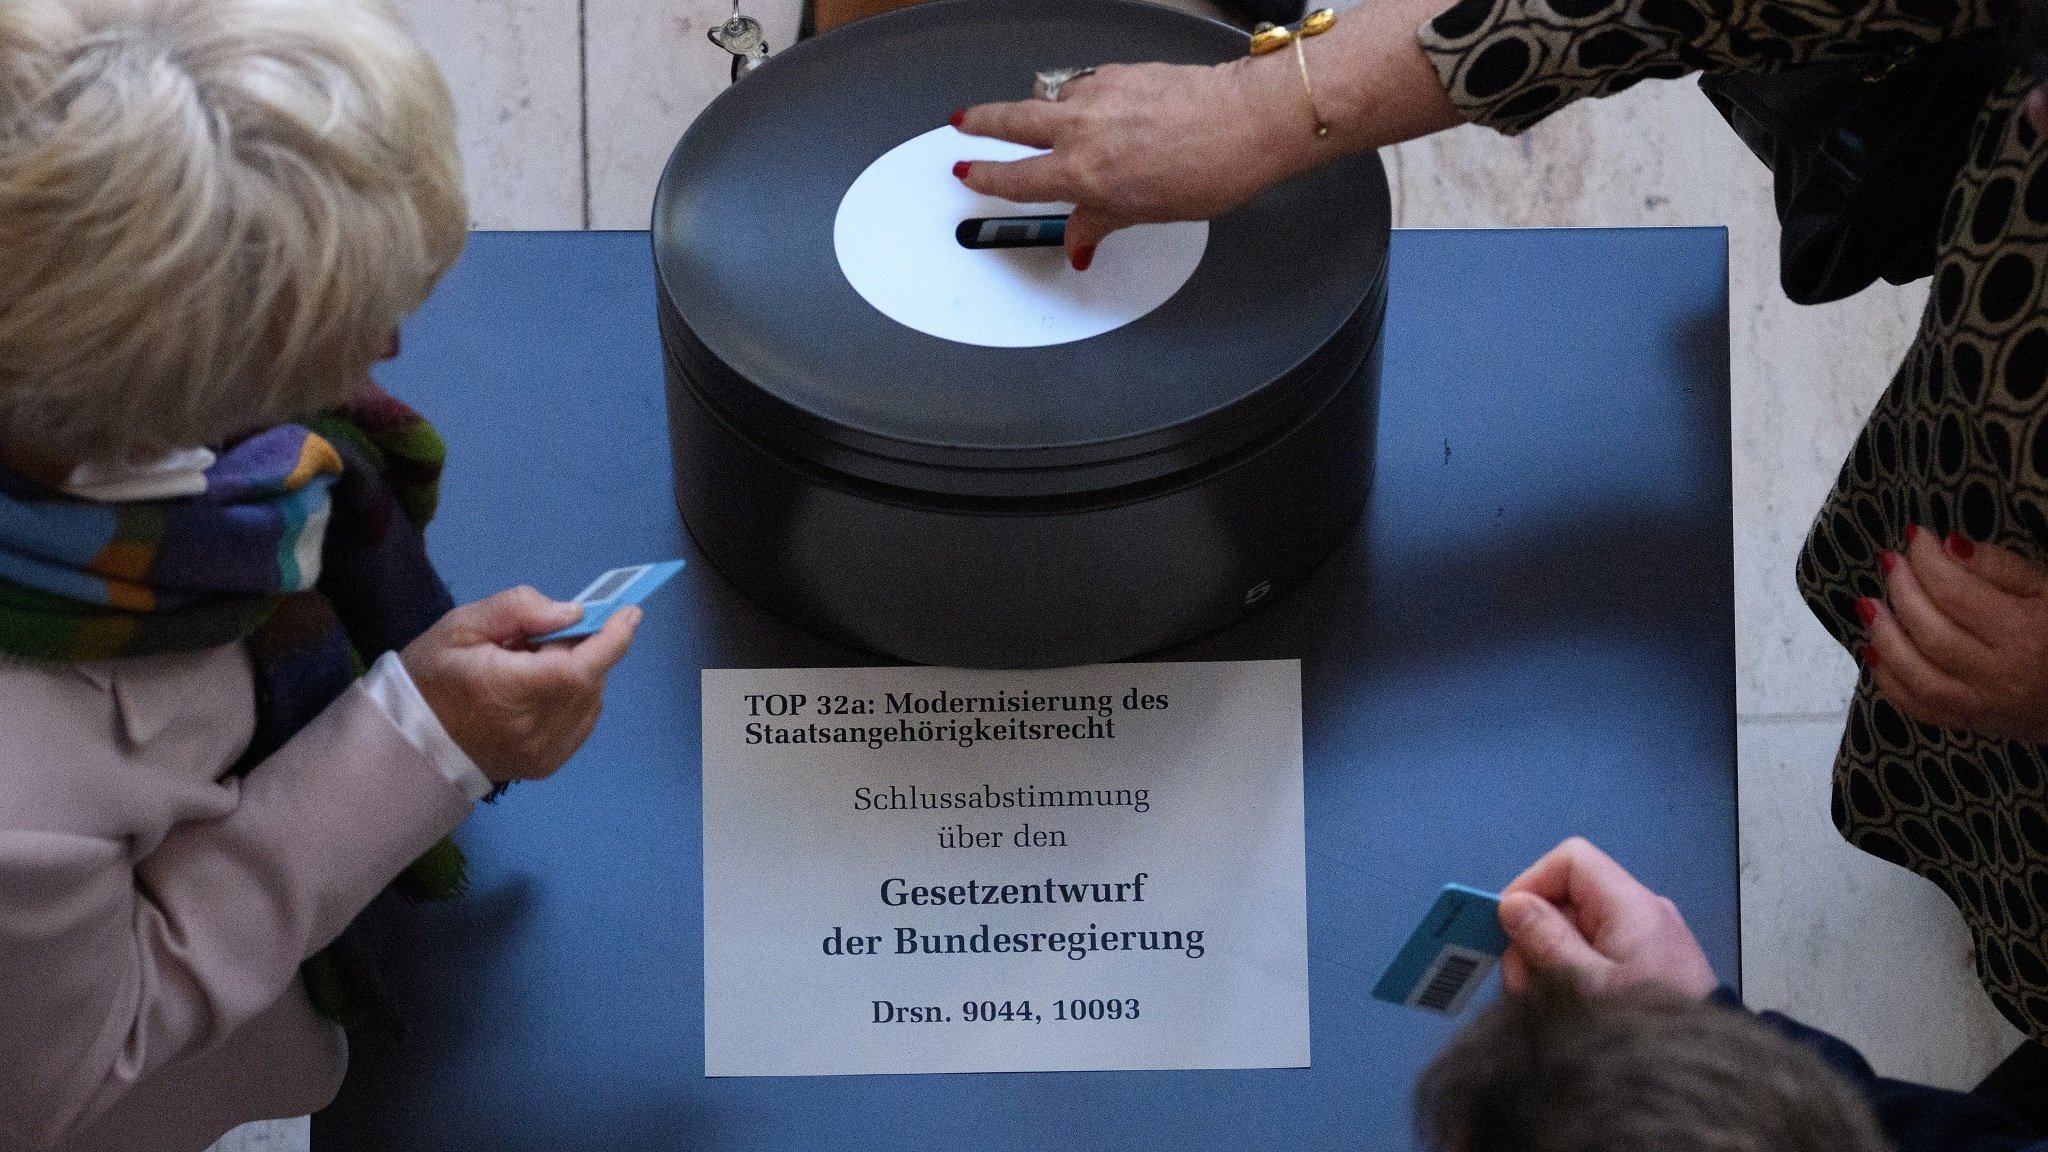 Abstimmung über den Gesetzentwurf der Bundesregierung zur Modernisierung des Staatsangehörigkeitsrechts im Bundestag